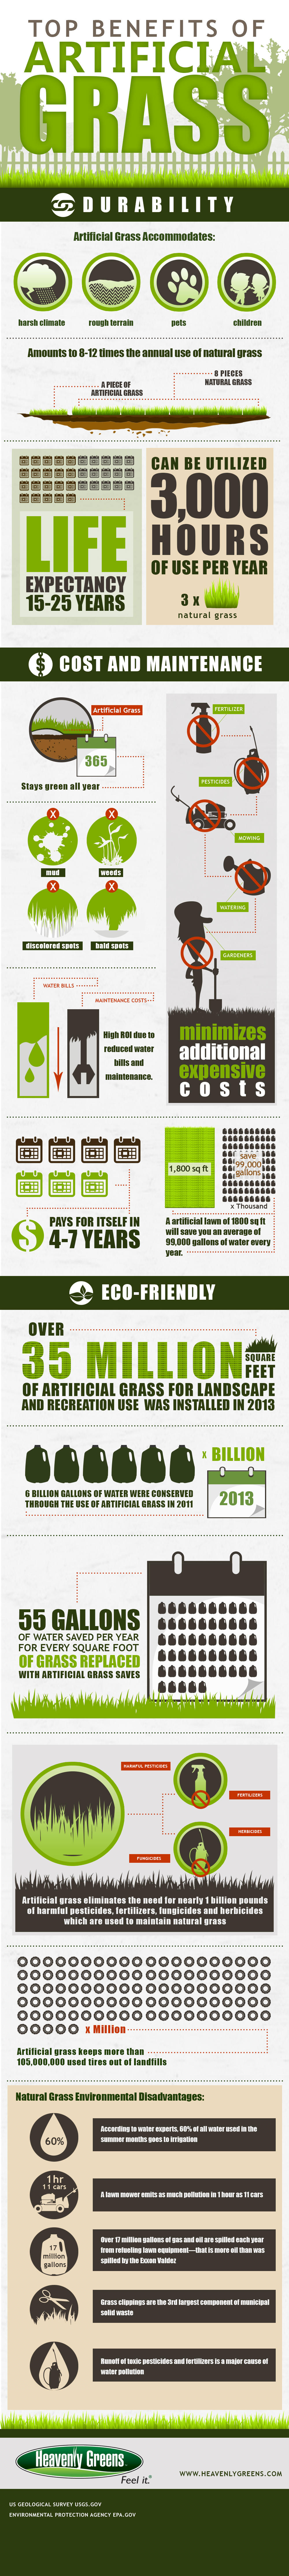 Top Benefits of Artificial Grass